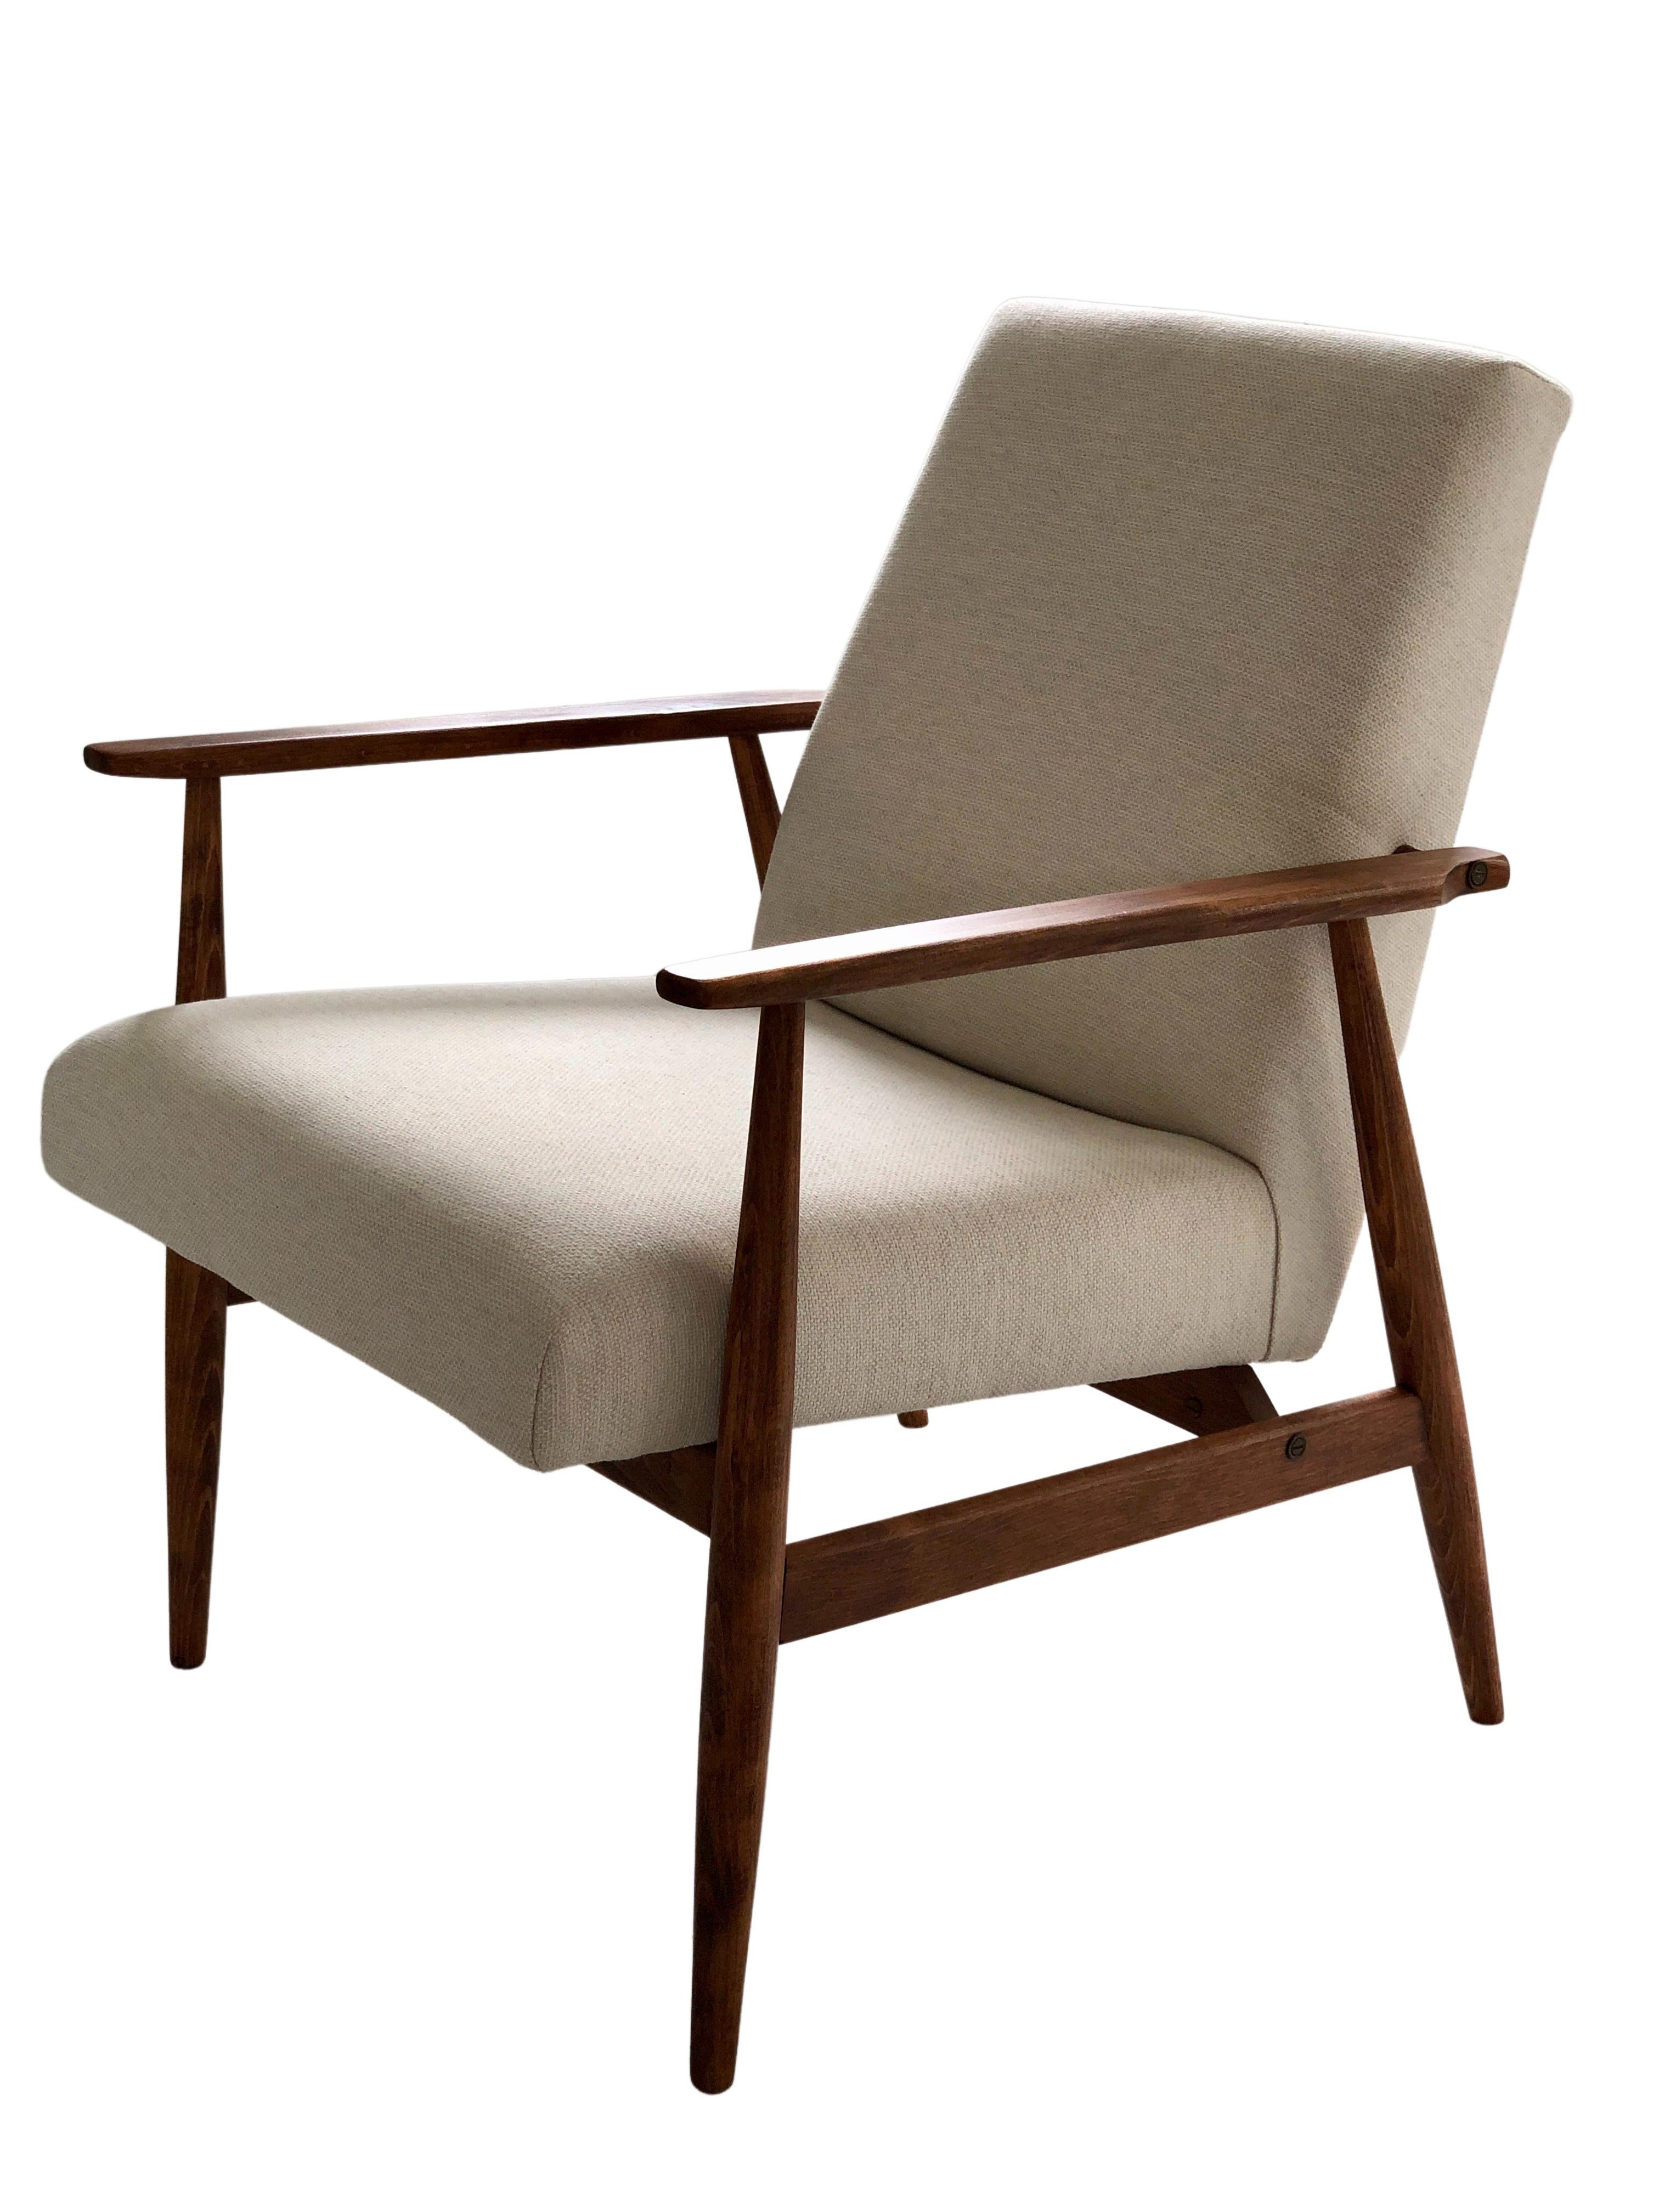 Das Set aus zwei Sesseln wurde von Henryk Lis entworfen. Die Struktur besteht aus Buchenholz in einer warmen Walnussfarbe, die mit einem seidenmatten Lack überzogen ist. Die Polsterung ist aus schwerem, natürlichem Baumwollstoff in Beige. Die